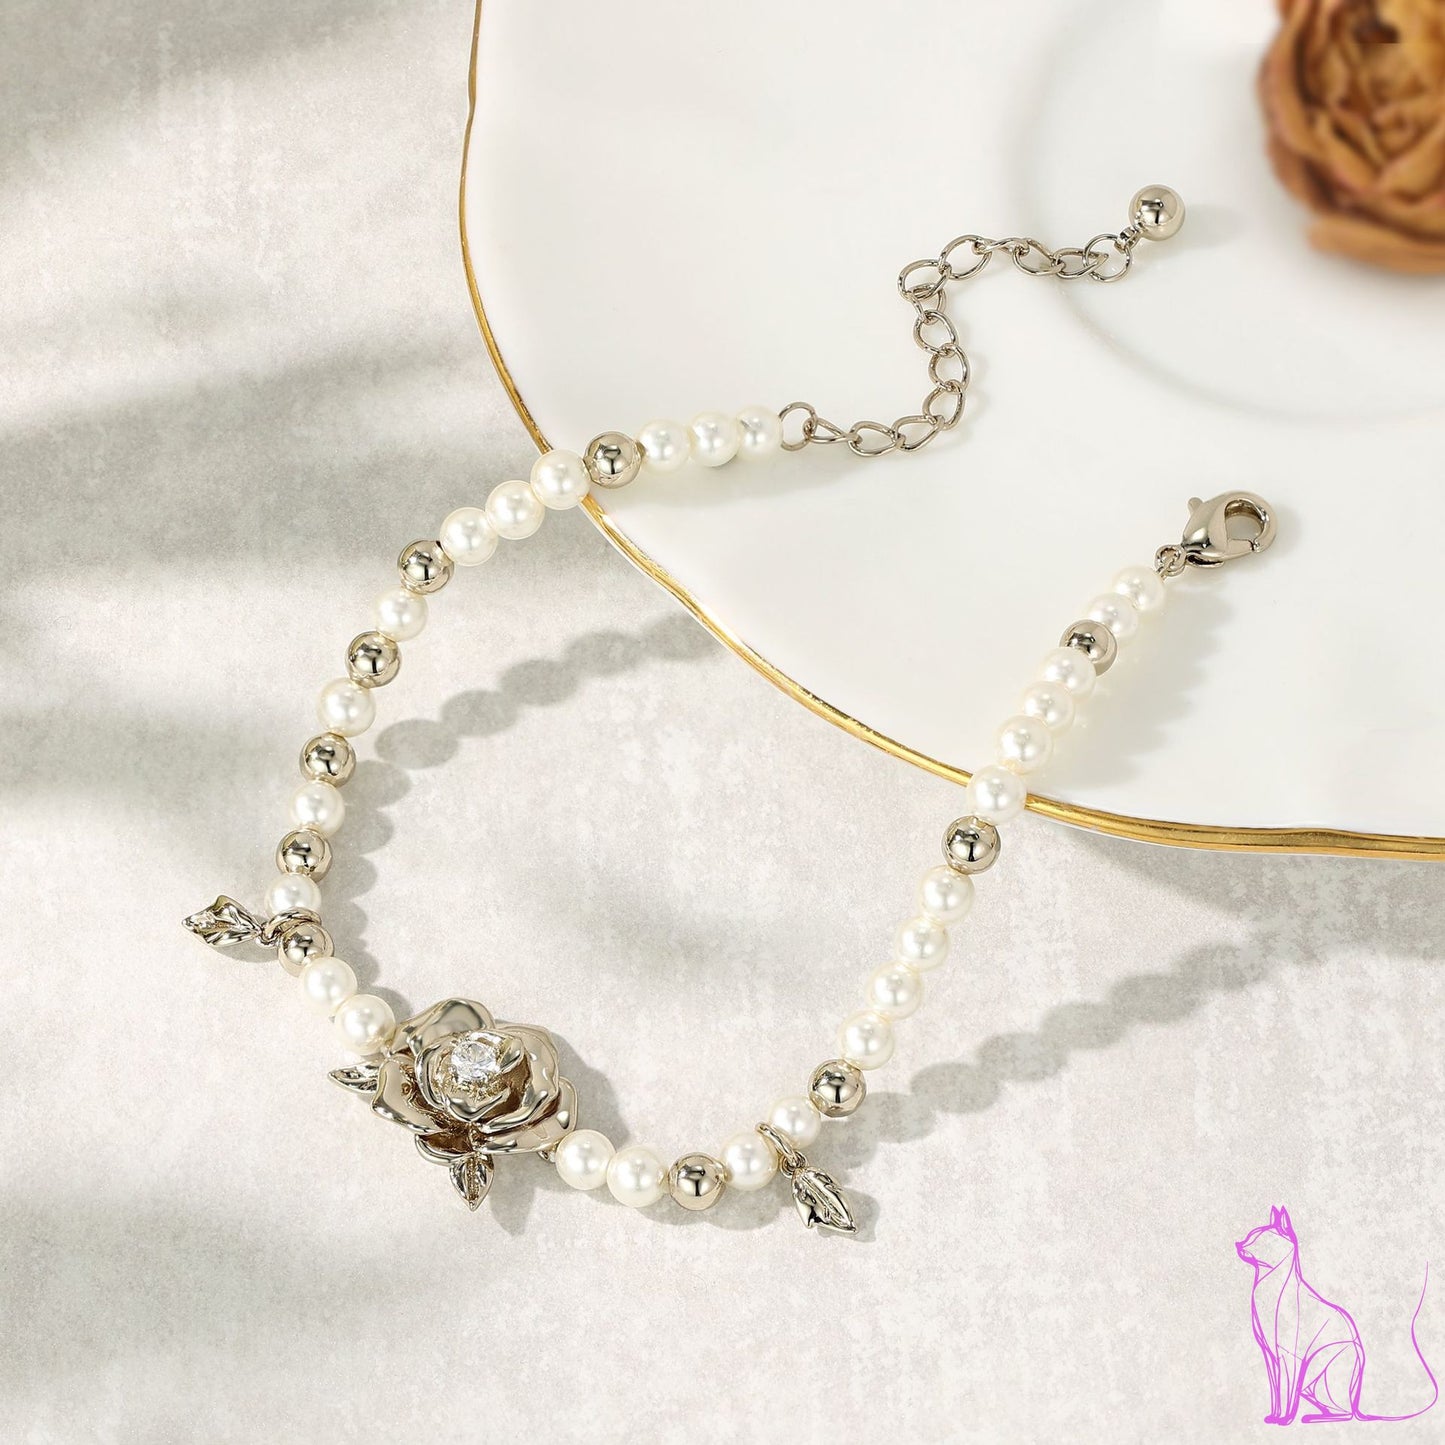 French designer Valentine's Day rose pearl bracelet light luxury niche delicate beaded bracelet women's sense of luxury